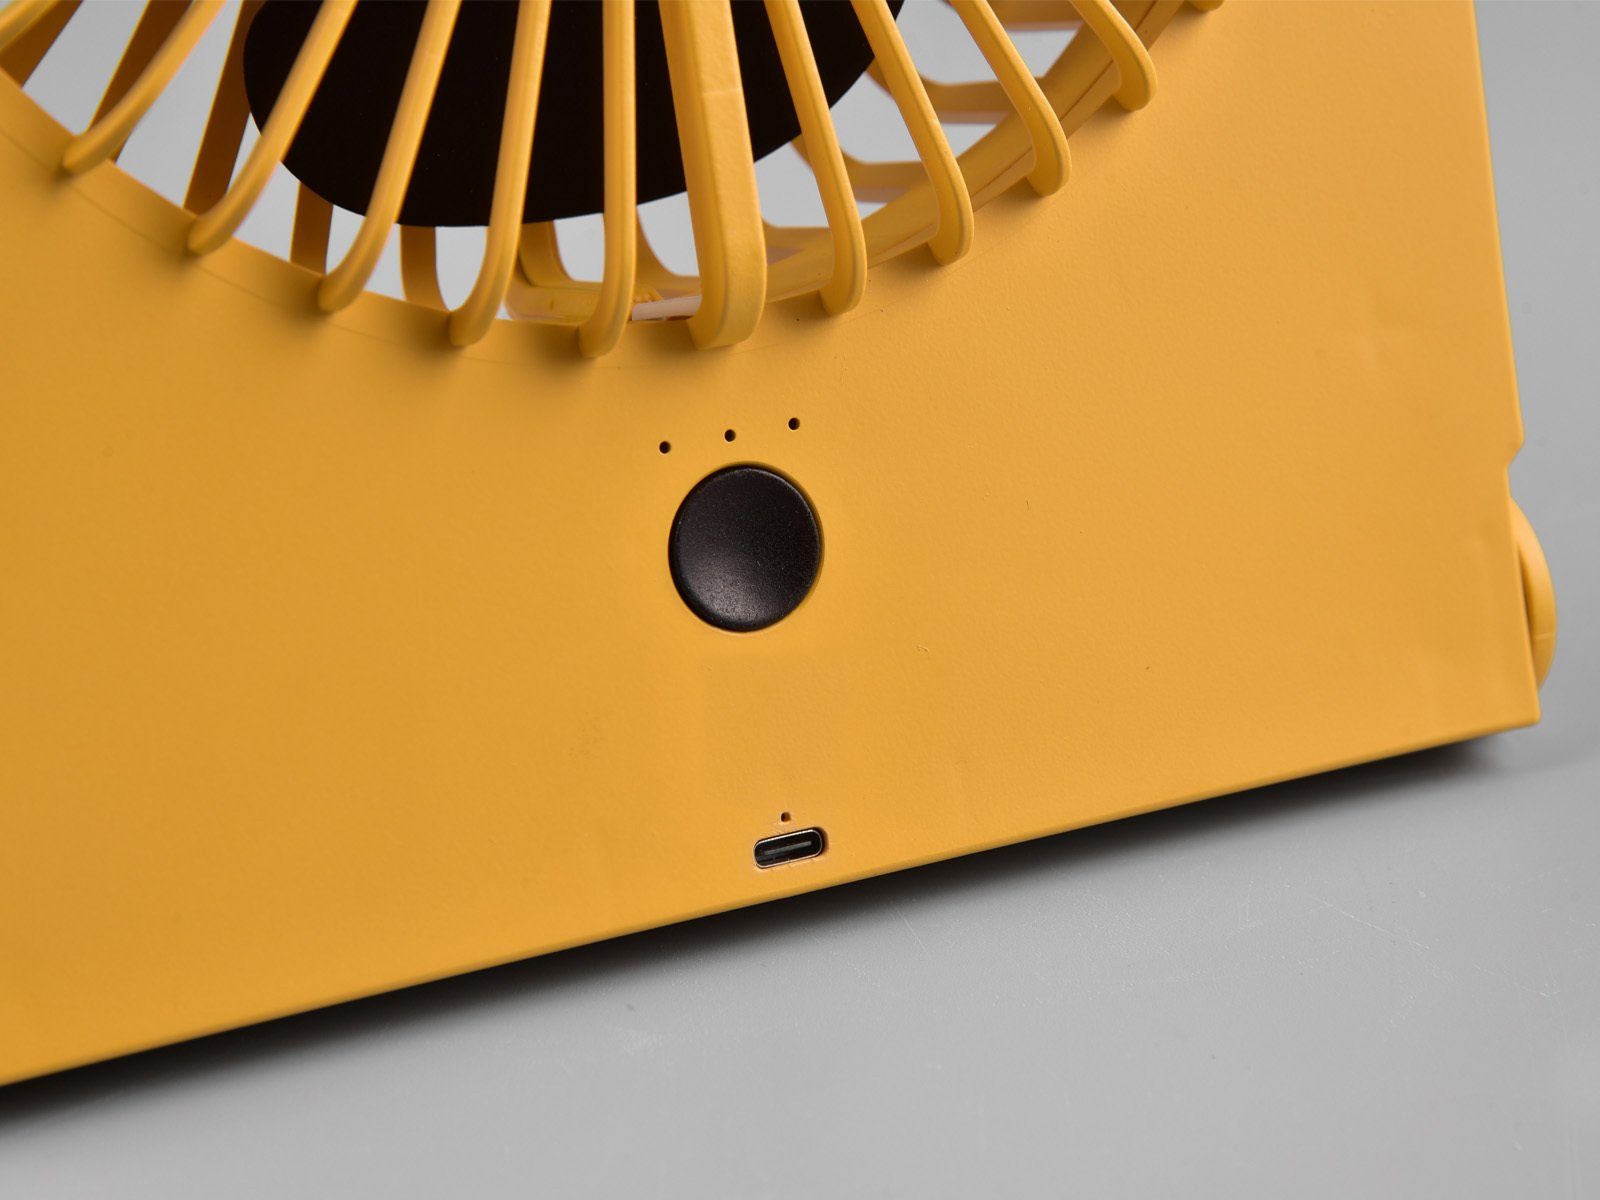 Windmaschine Setpoint Gelb SET Winderzeuger 2er Zimmer-Ventilator Tischventilator, Raum-Lüfter Design